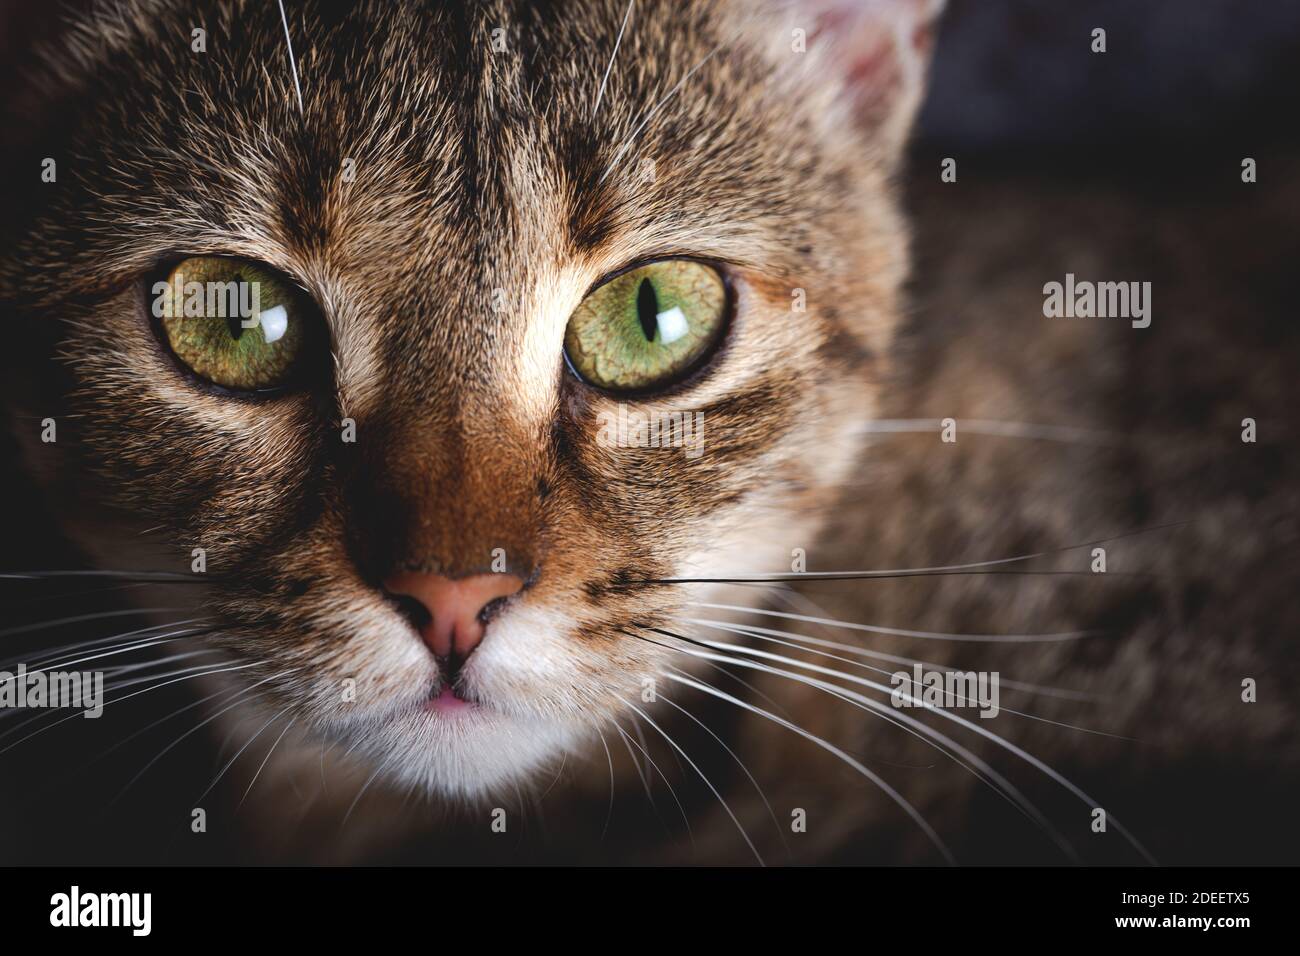 Chaton avec de beaux yeux. Portrait en gros plan d'un chaton aux yeux verts. Banque D'Images